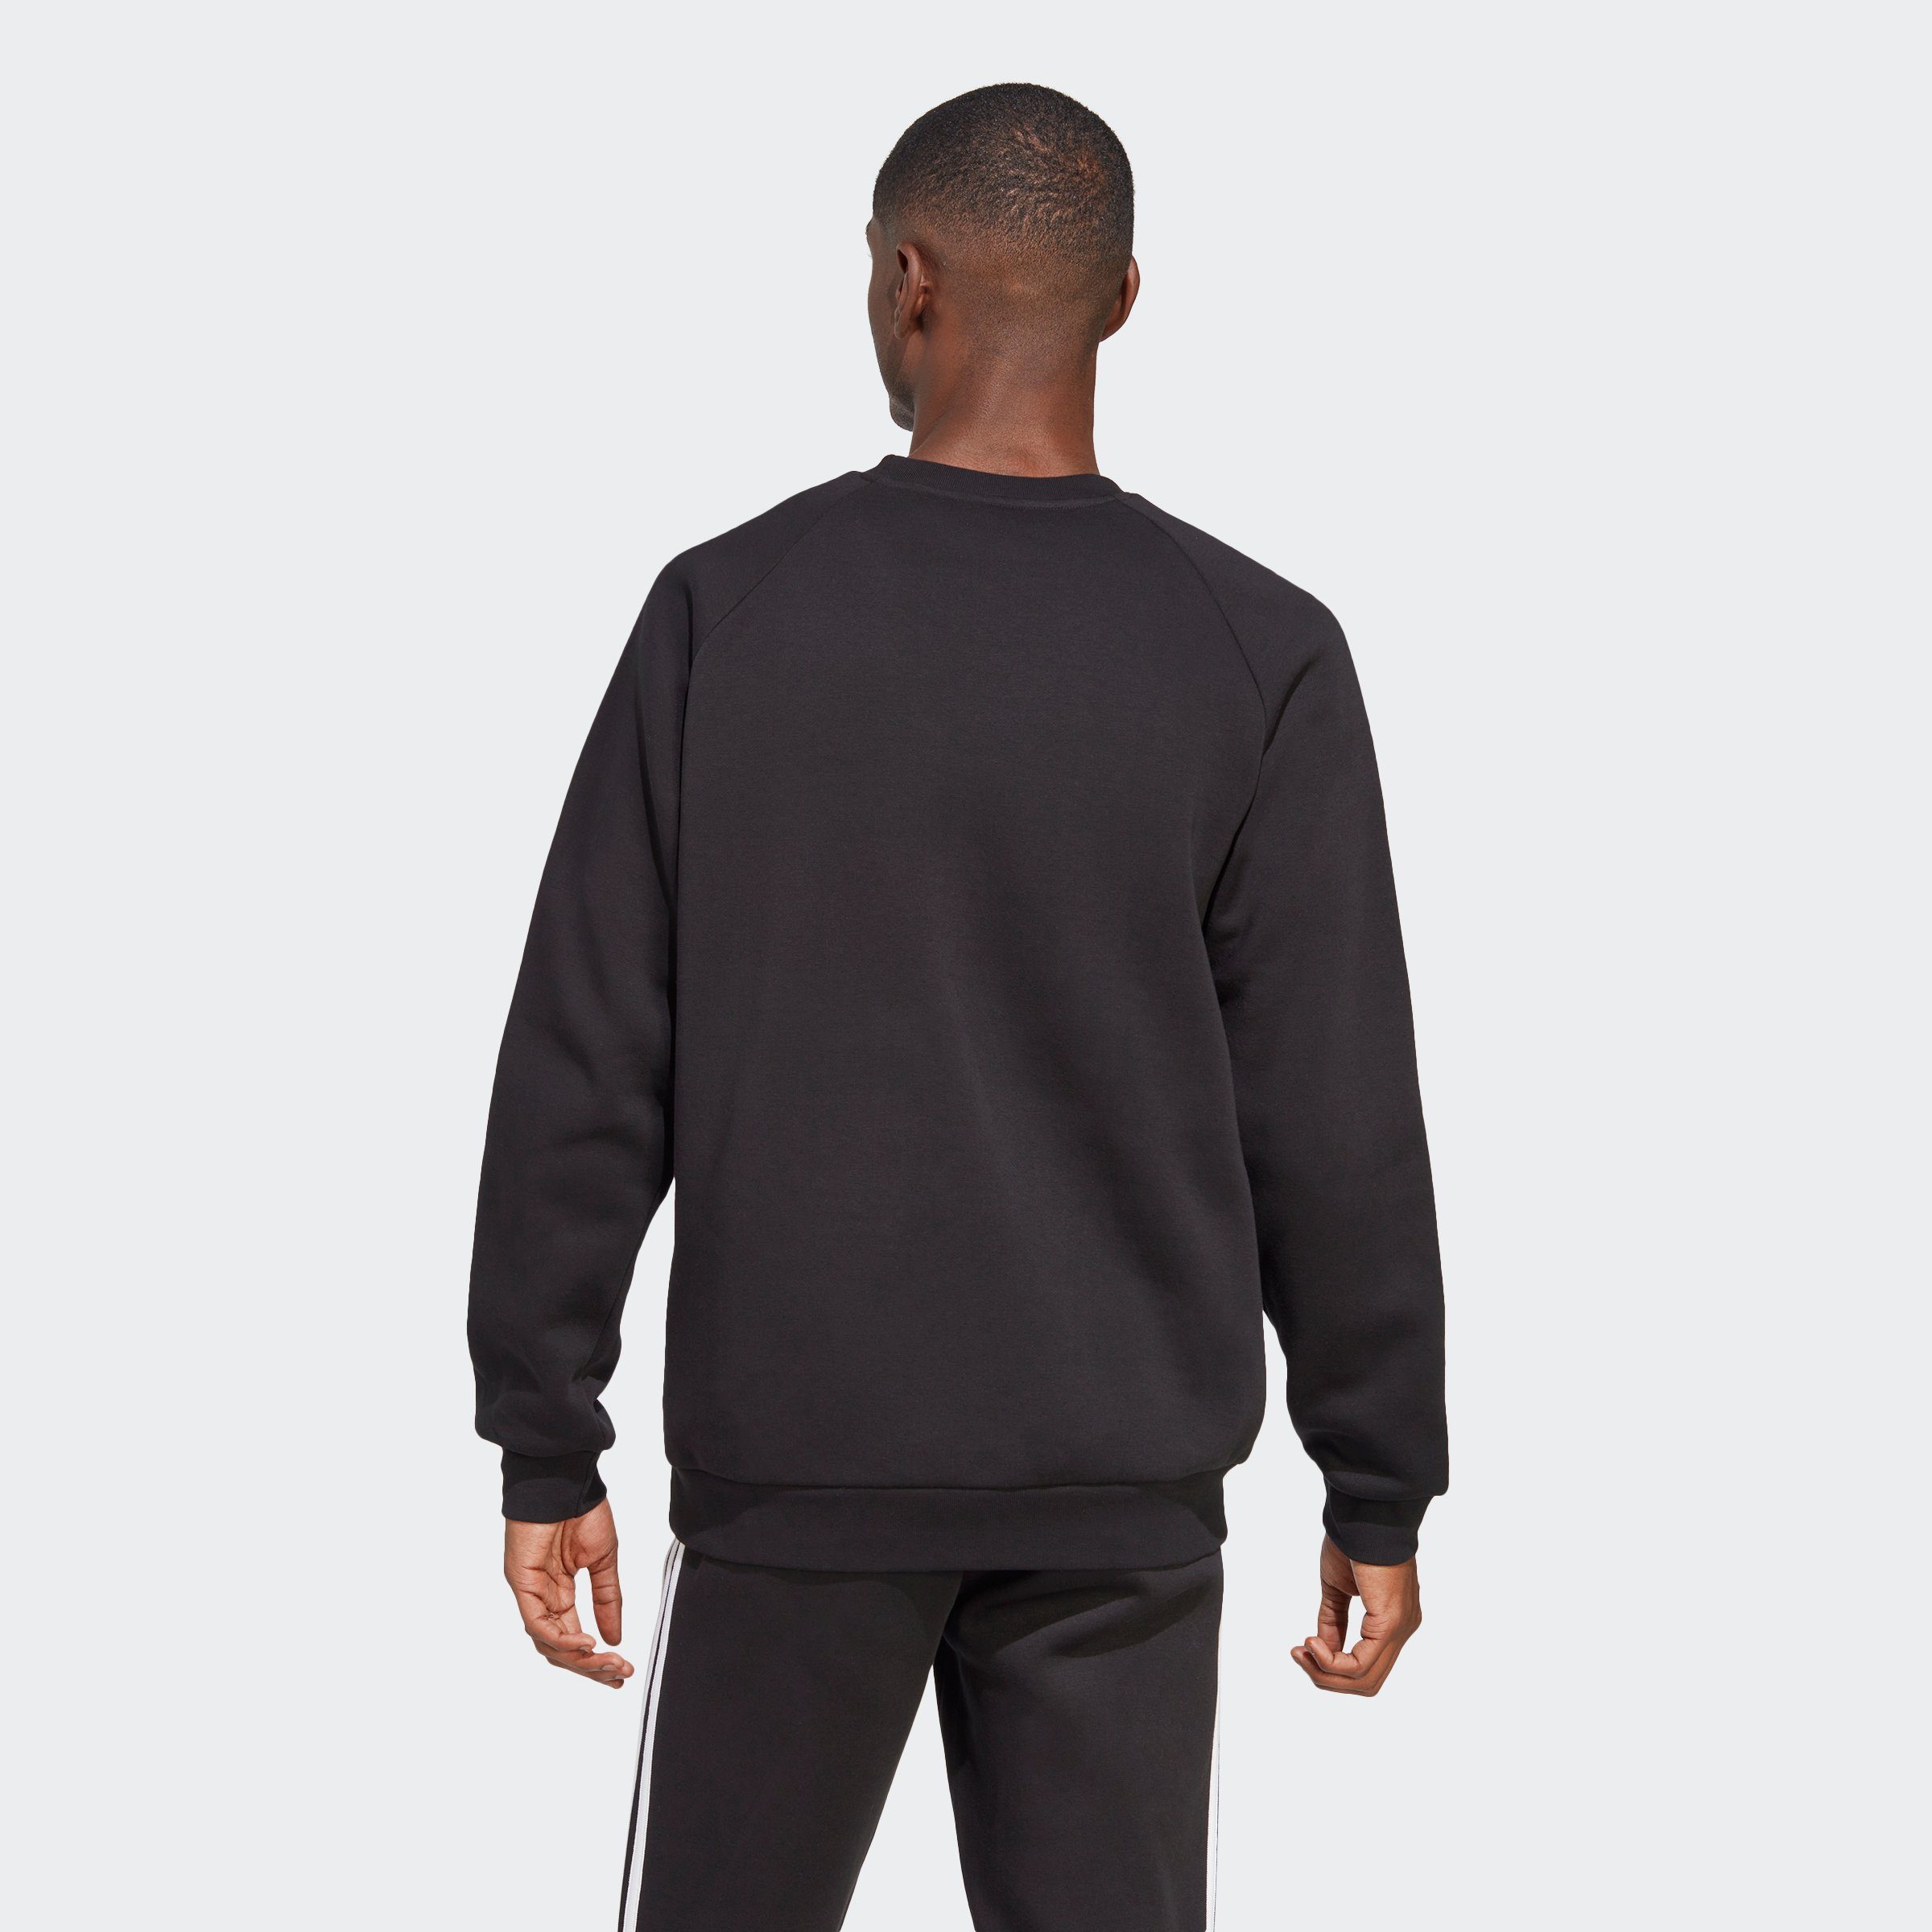 adidas Originals Sweatshirt ADICOLOR Black 3-STREIFEN CLASSICS